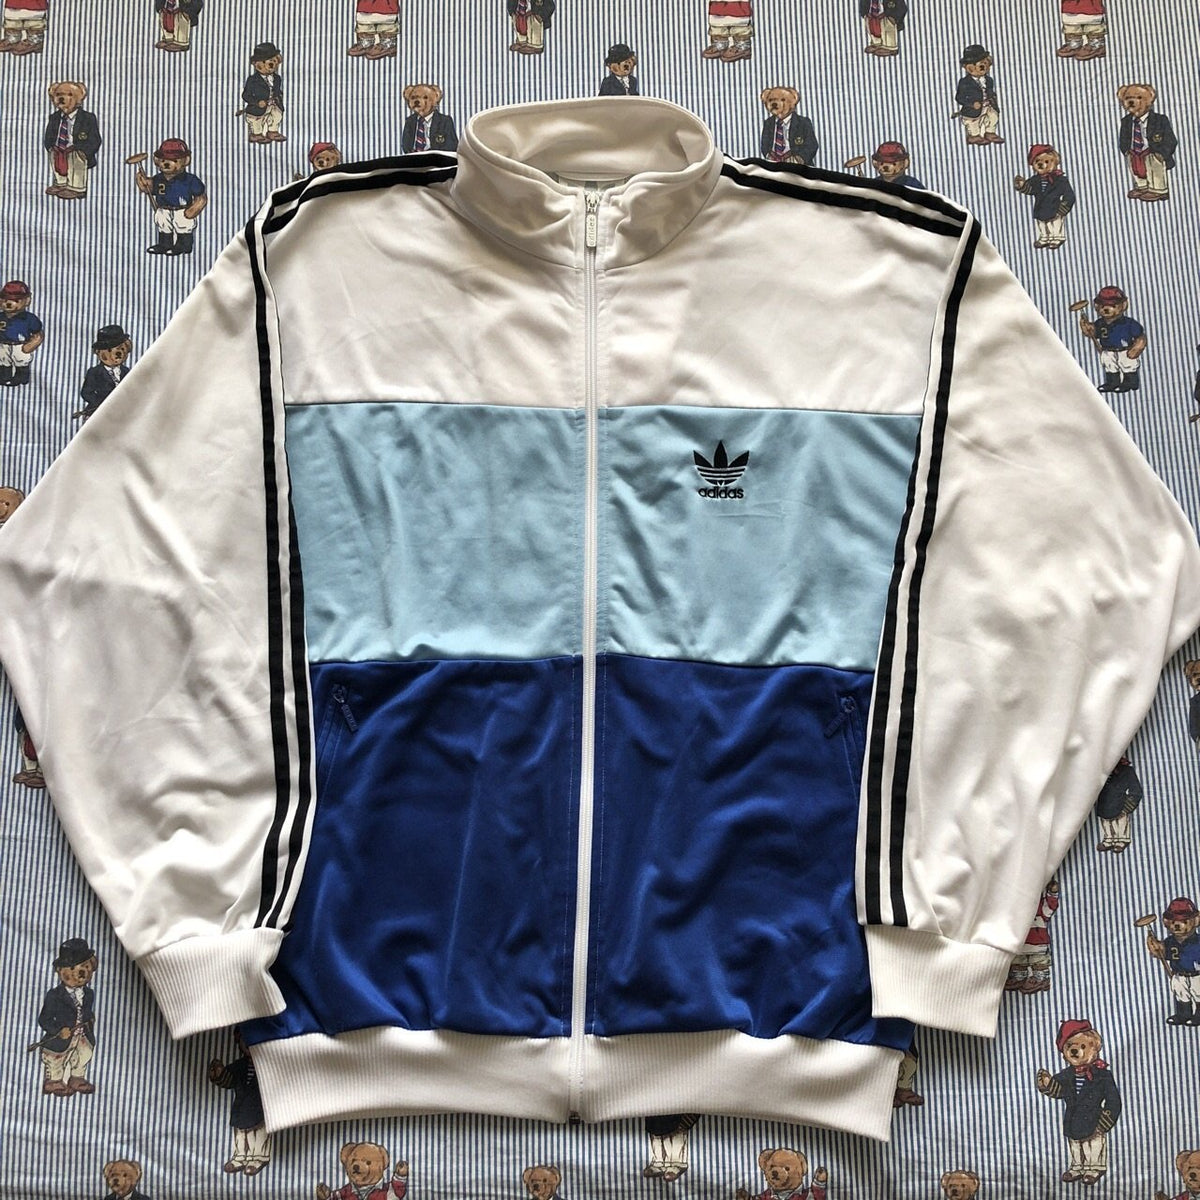 adidas track jacket blue and white